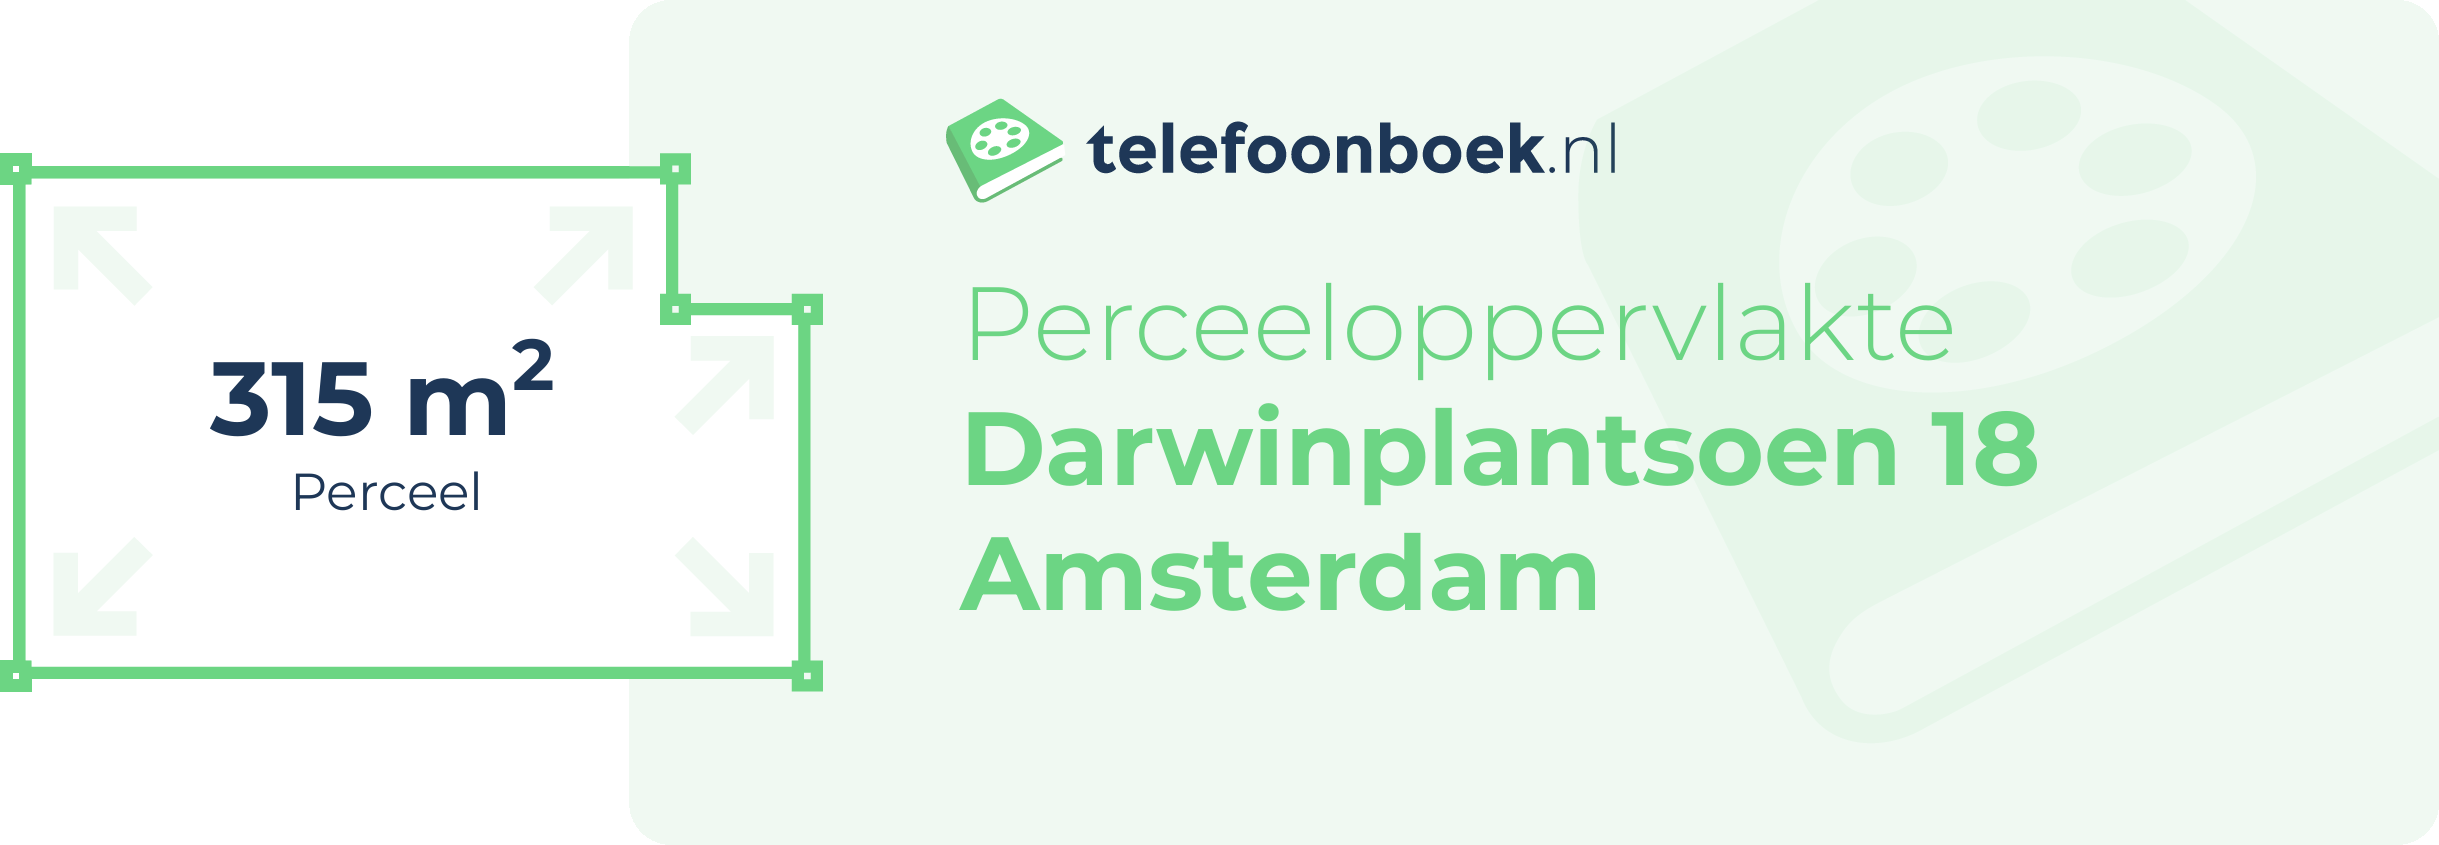 Perceeloppervlakte Darwinplantsoen 18 Amsterdam